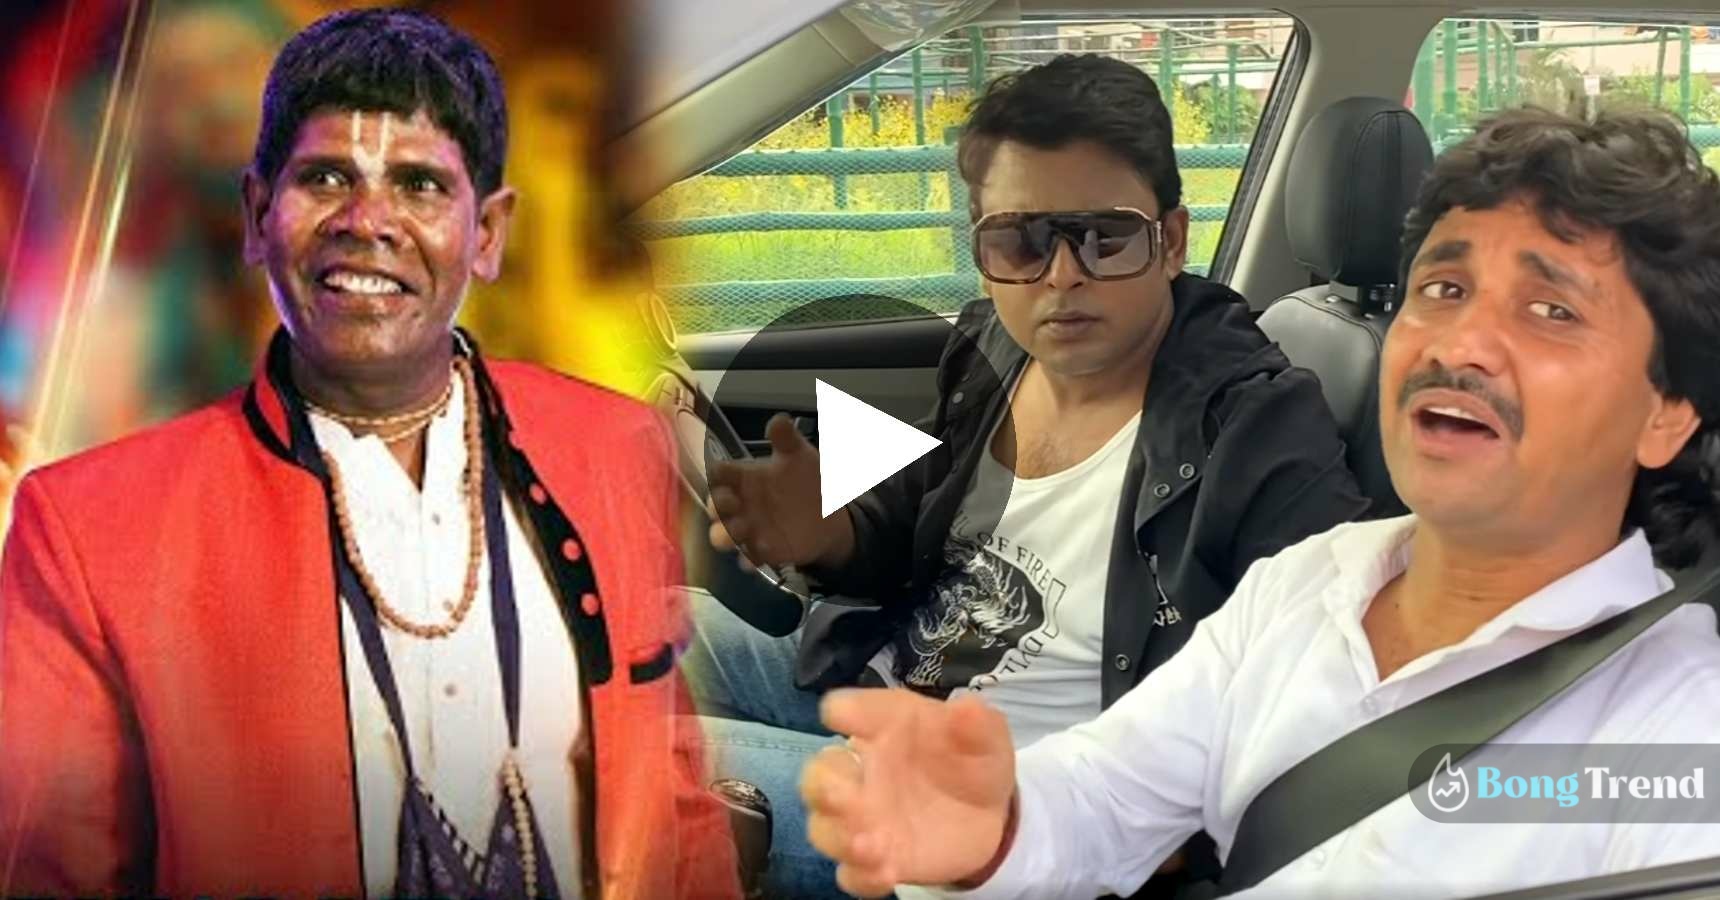 After Bhuban Badyakar new singer Milan Kumar Singing video viral on internet